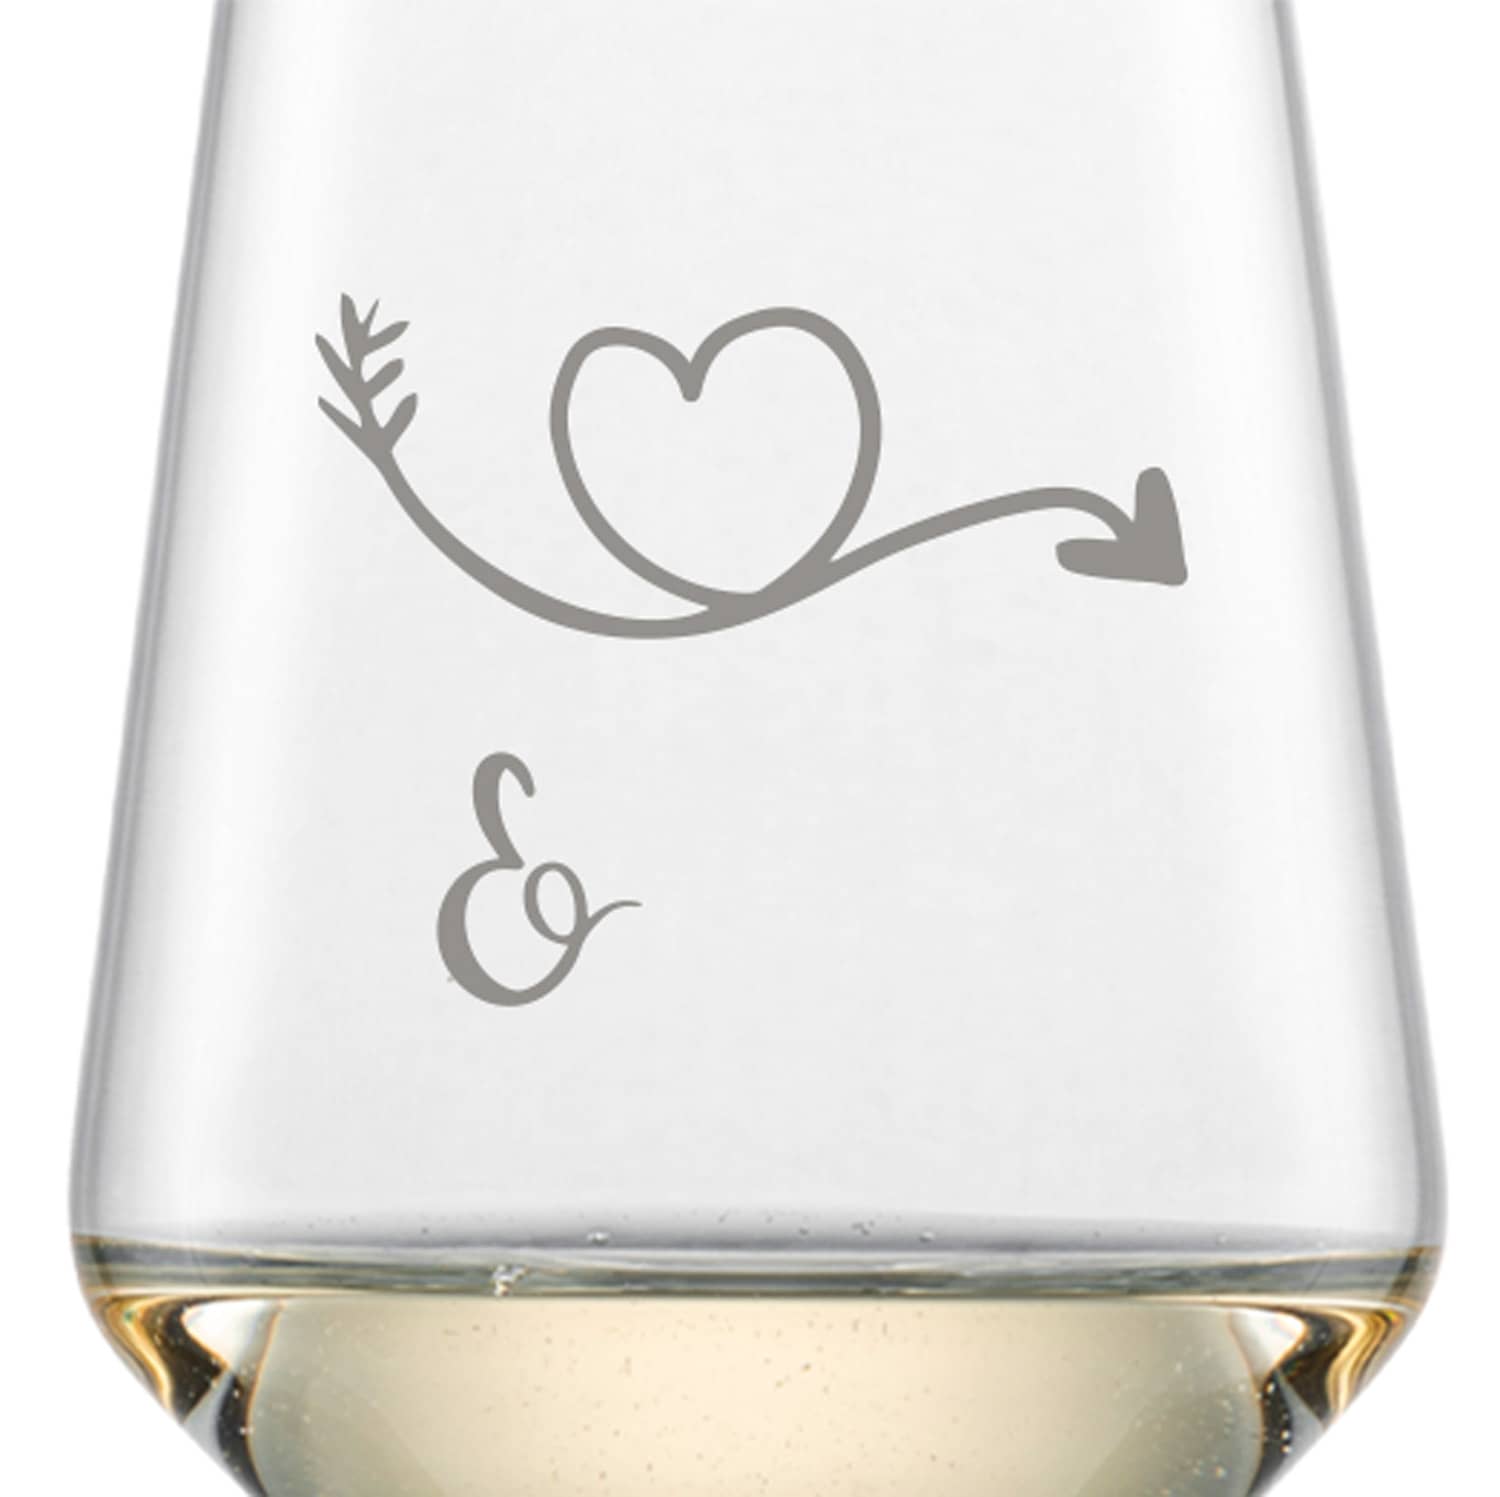 Schott Zwiesel Riesling Weißweinglas PURE mit Namen oder Wunschtext graviert (Herzpfeil)